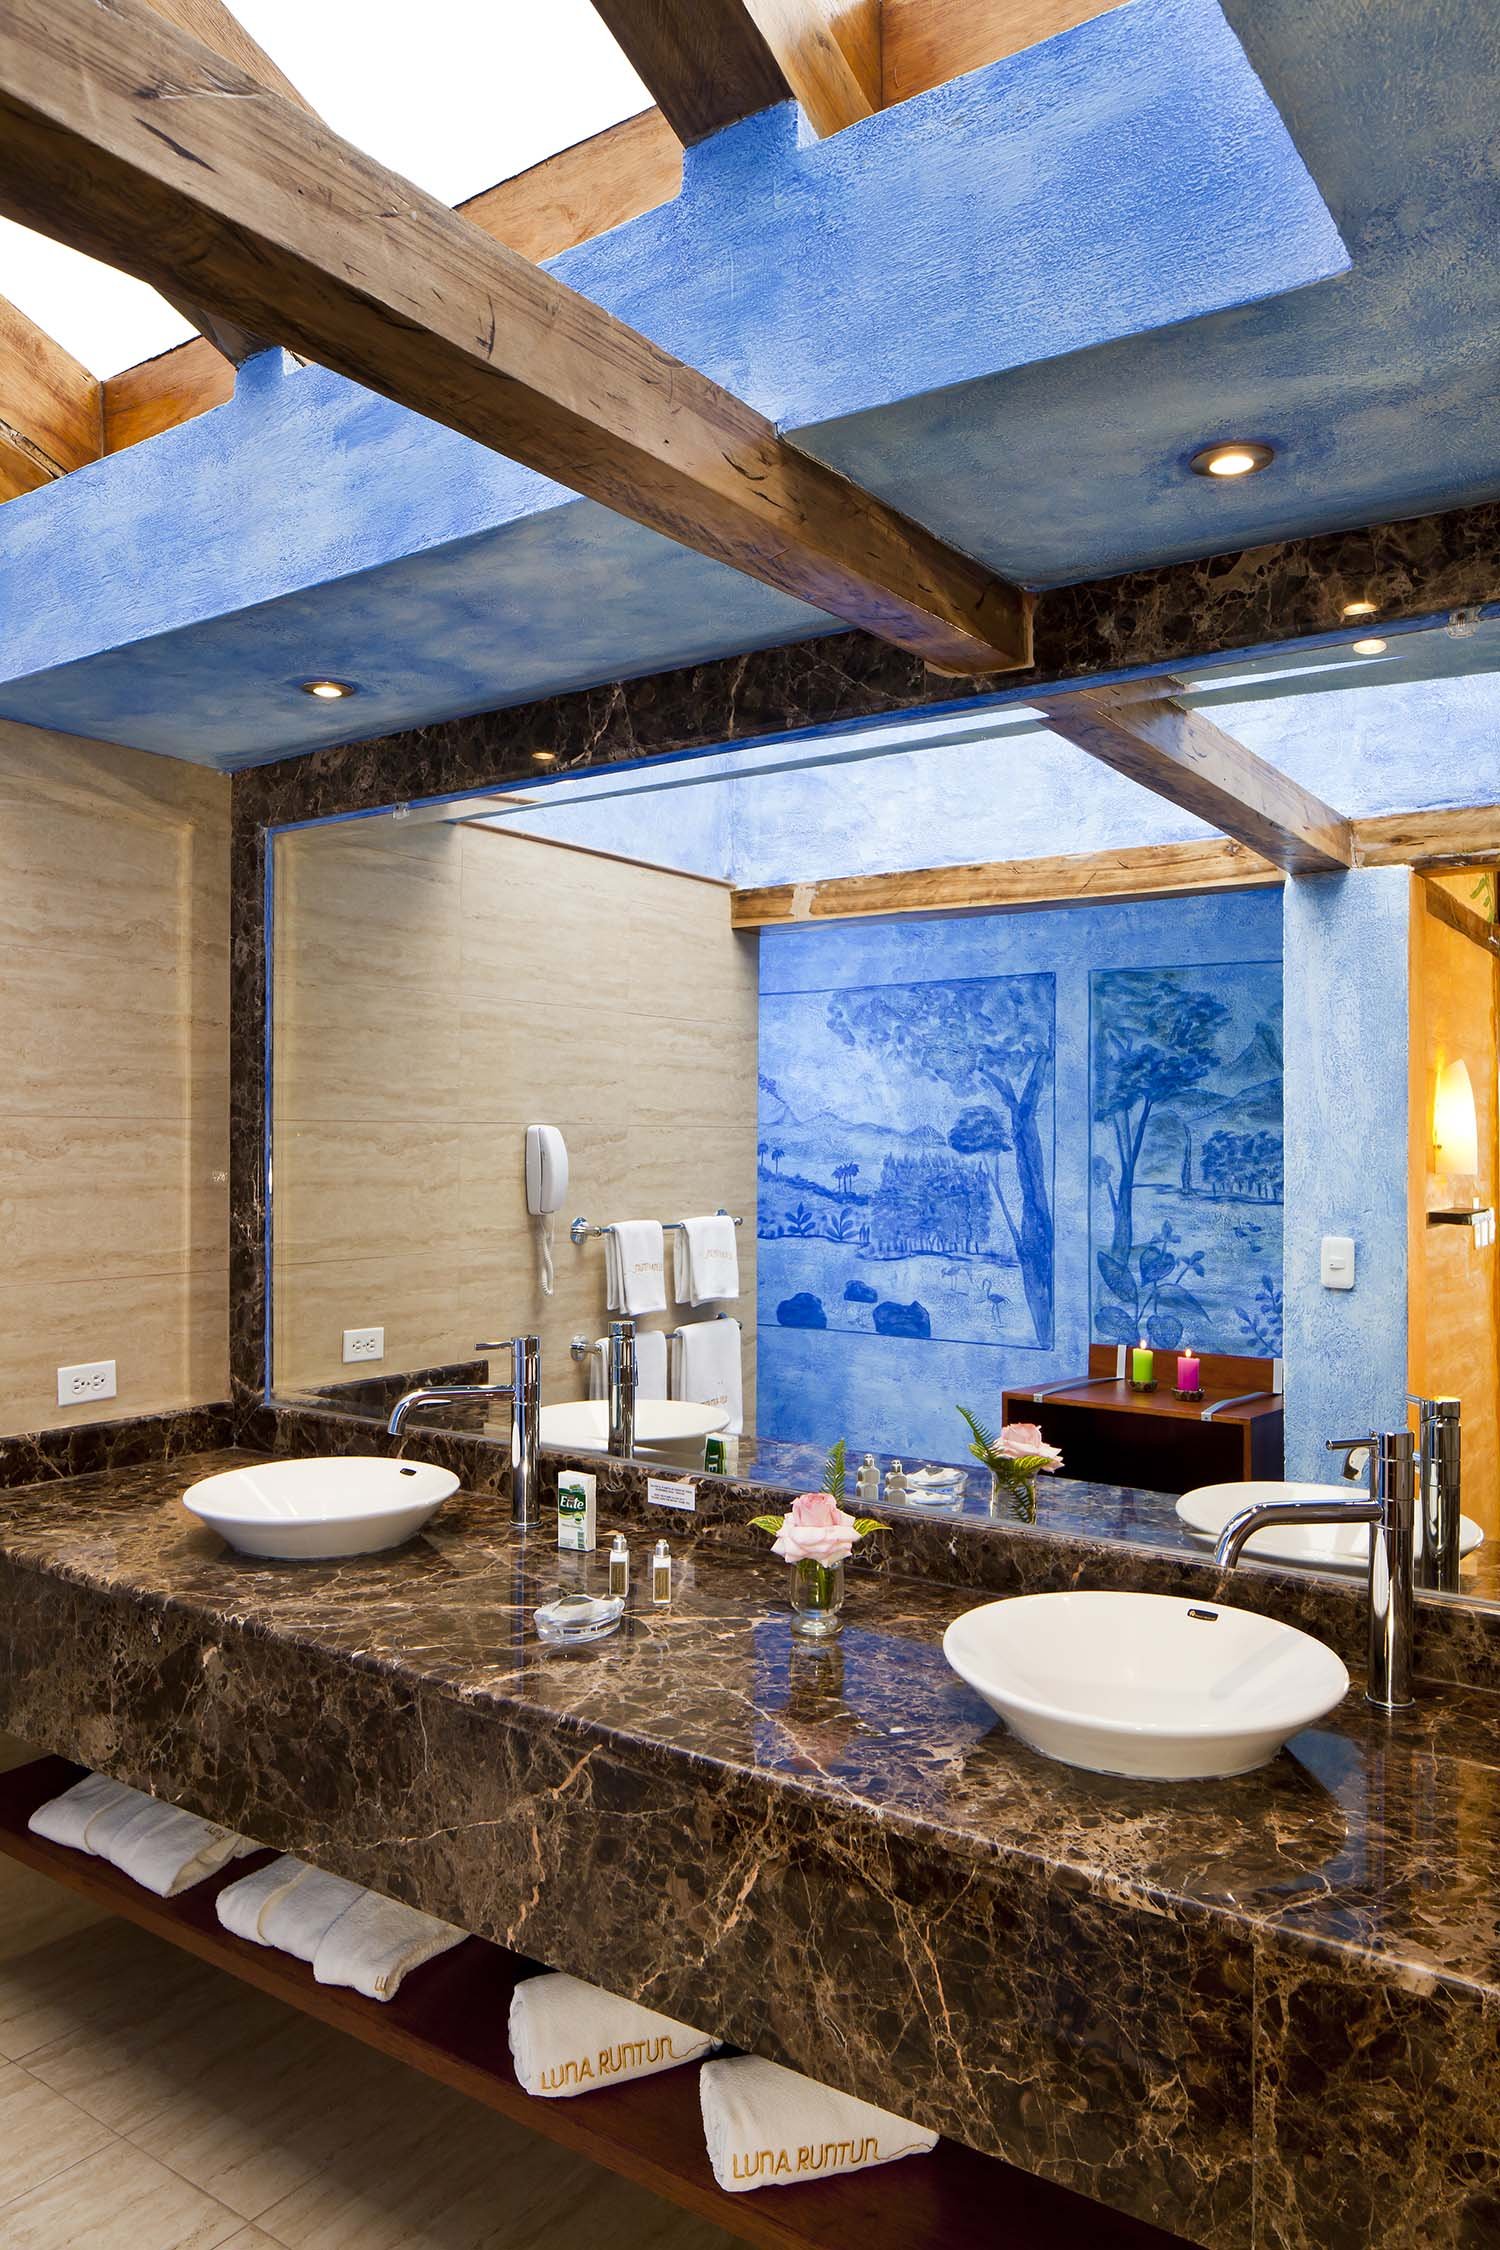 Bathroom Romantic Volcanic Suite 60 - Luna Volcan - Hotel en Banos Ecuador 18.24.20.jpg